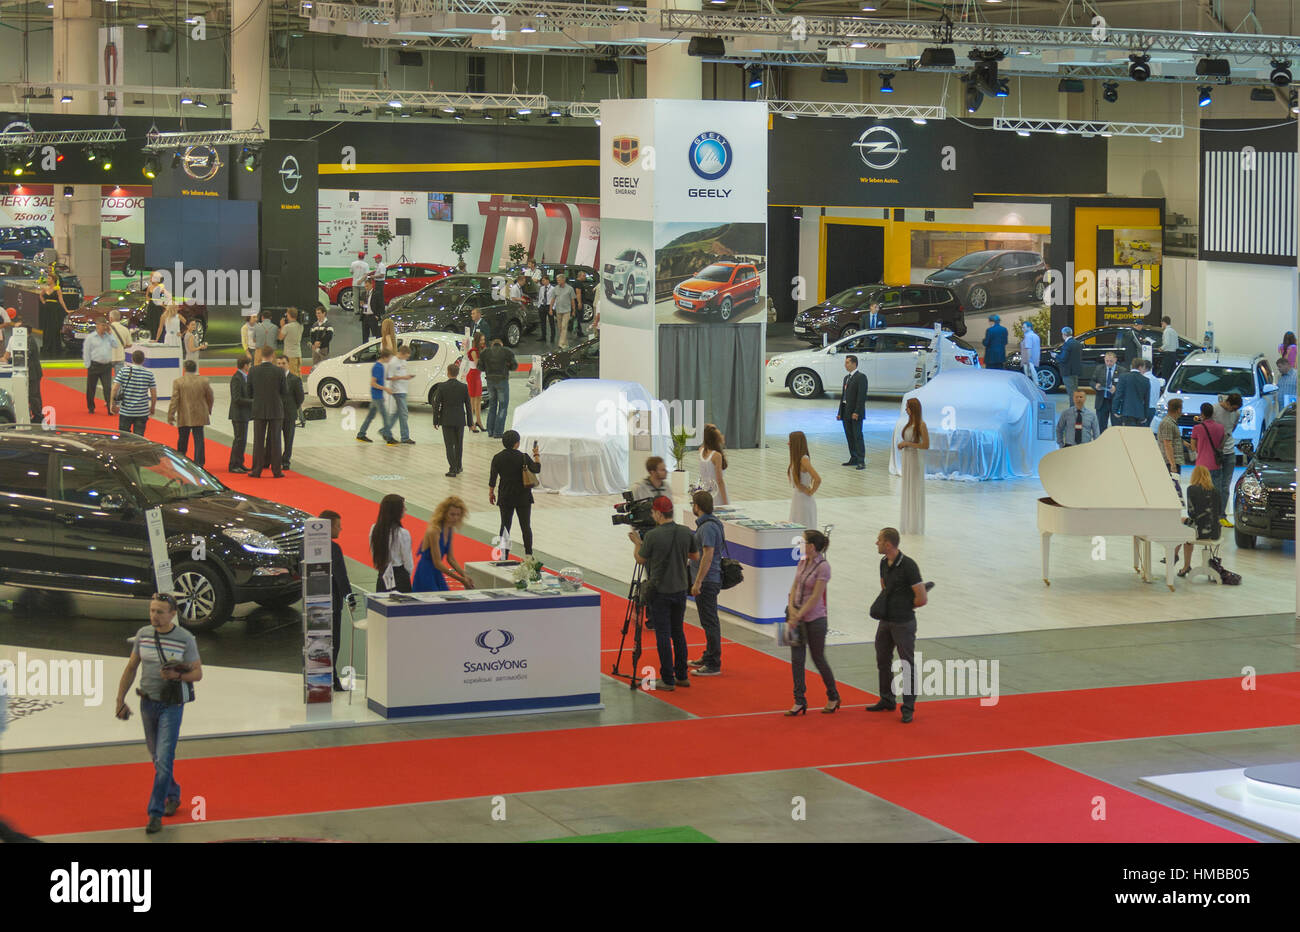 KIEV, UKRAINE - 29 mai : visite de visiteurs de l'exposition boothes différents fabricants de voiture internationale avec de nouveaux modèles de voiture sur l'écran de l'EIDDD' 2013 Kyi Banque D'Images